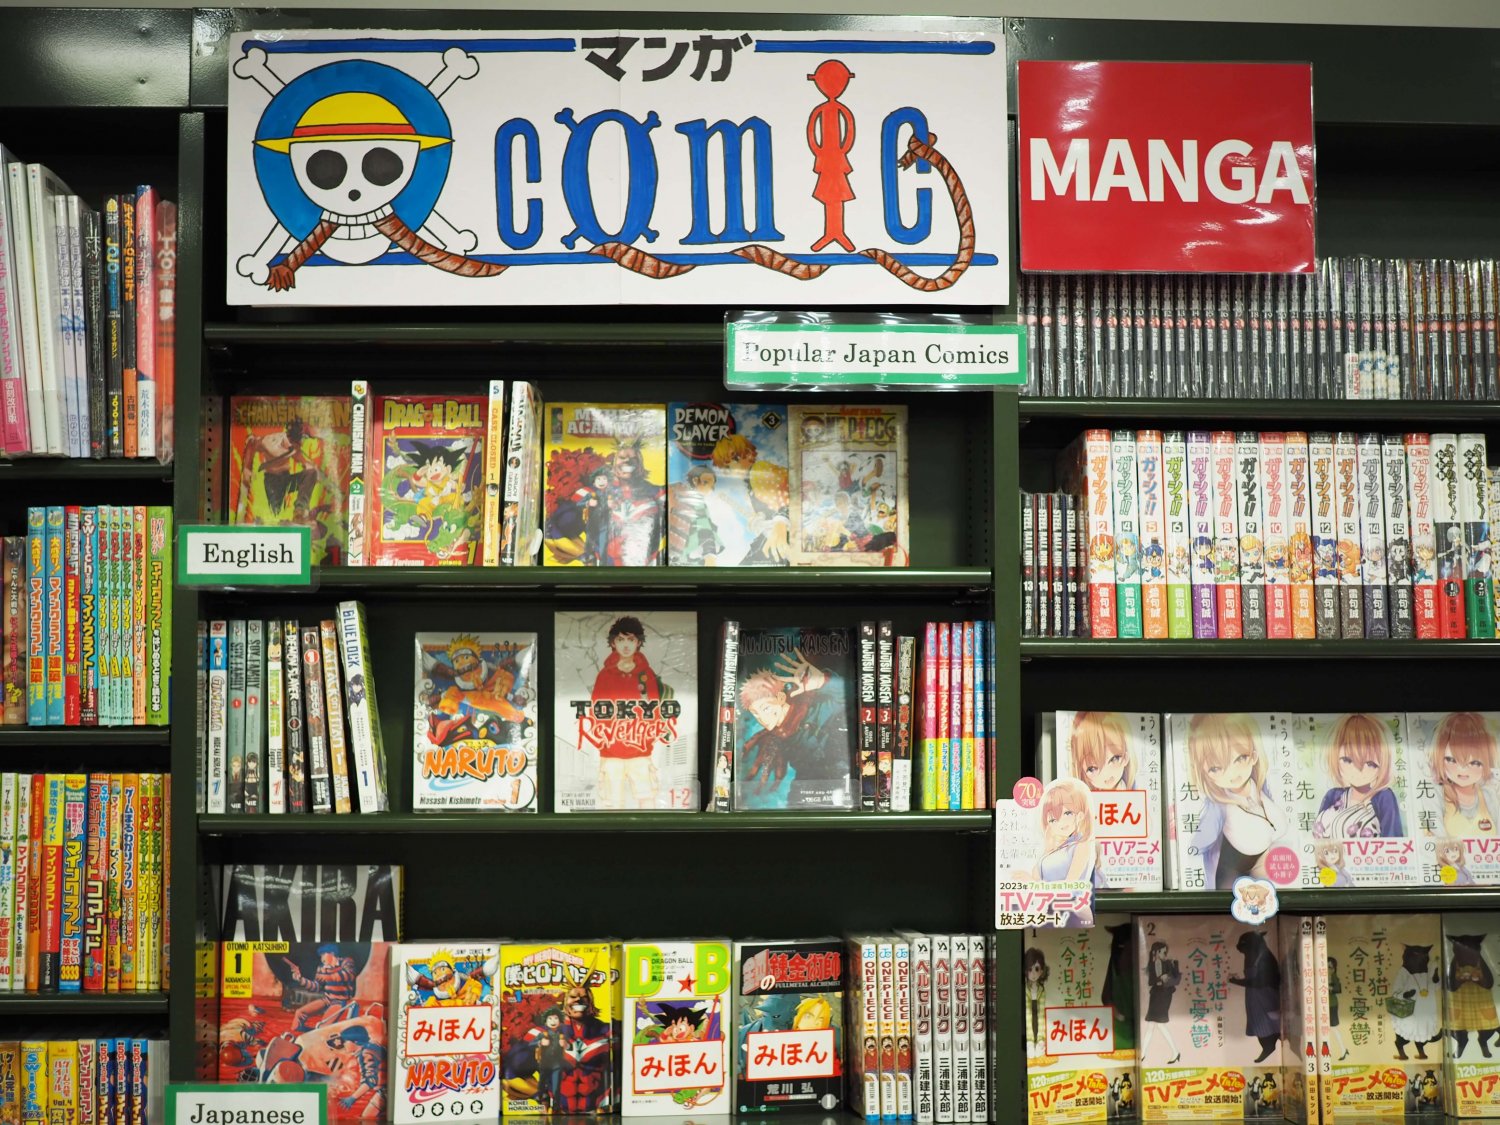 最近増えてきた訪日観光客向けに取り揃えた、翻訳版の人気コミック。日本人にも好評だとか。